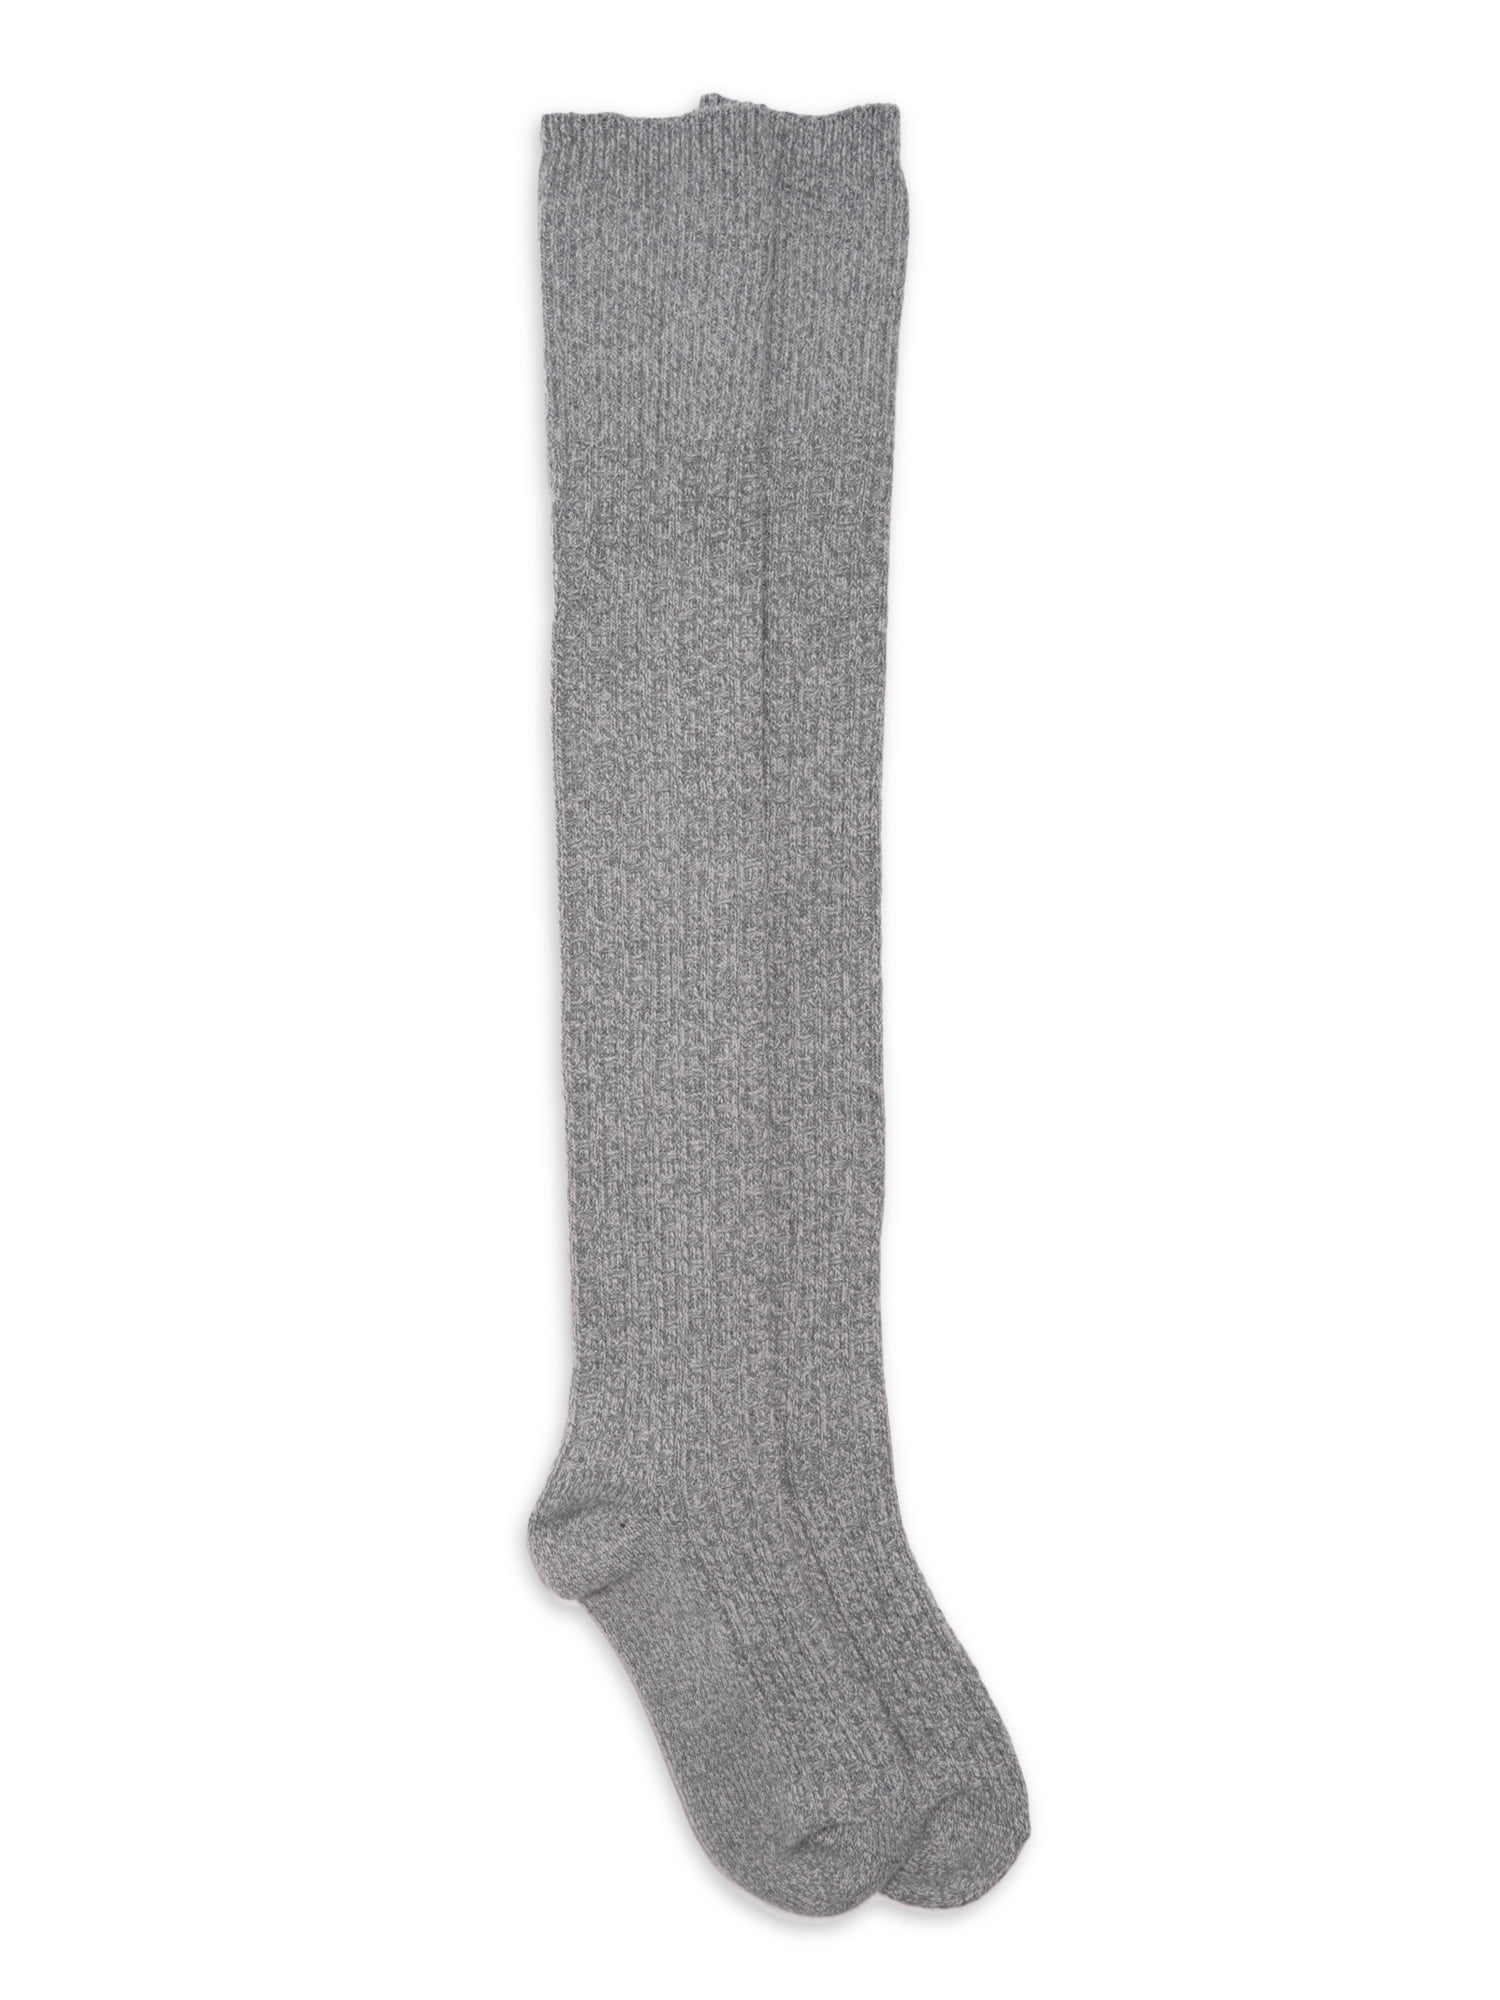 Muk Luks Women's Microfiber Over the Knee Boot Sock, 1-Pack, Size 6-11 ...